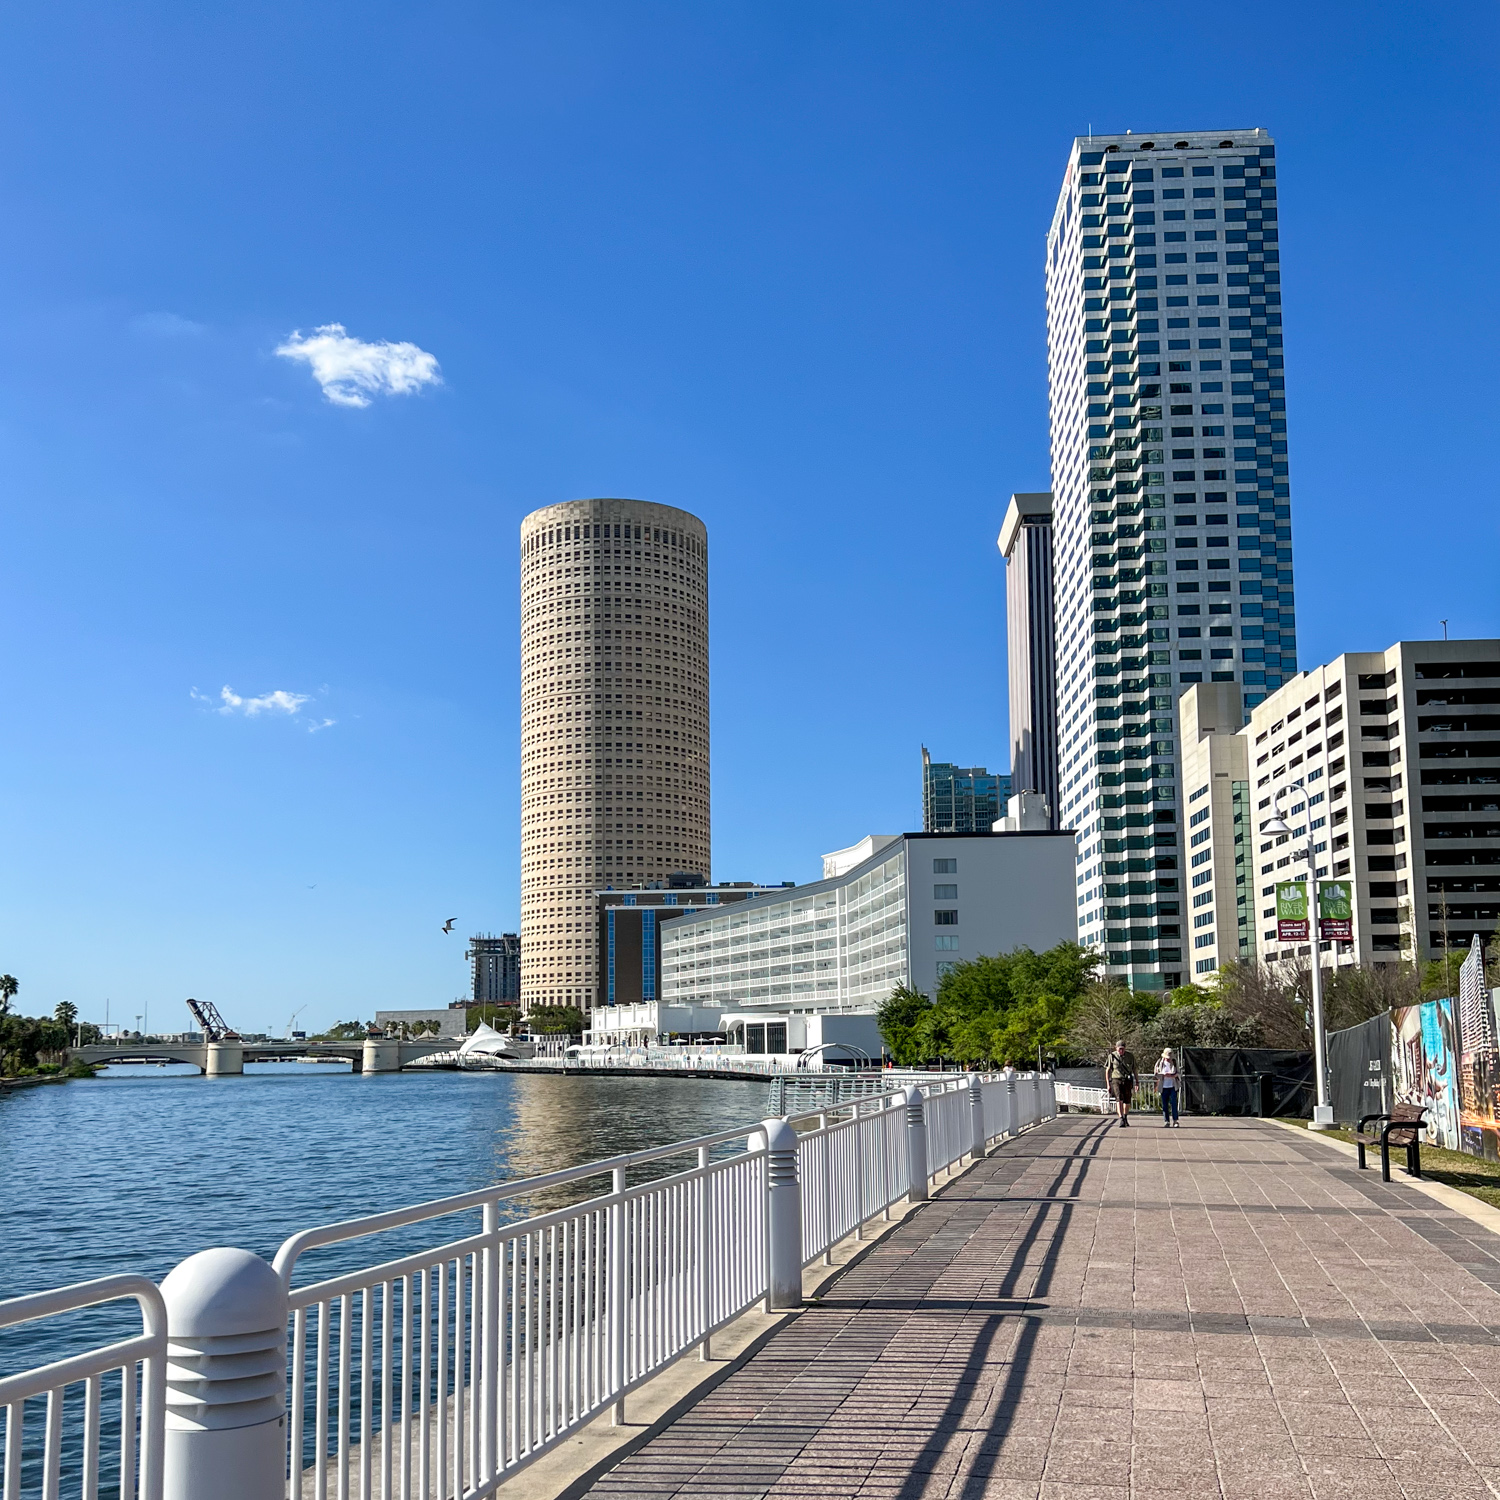 Caminar, trotar o andar en bicicleta en Riverwalk es una de las actividades al aire libre más populares en Tampa